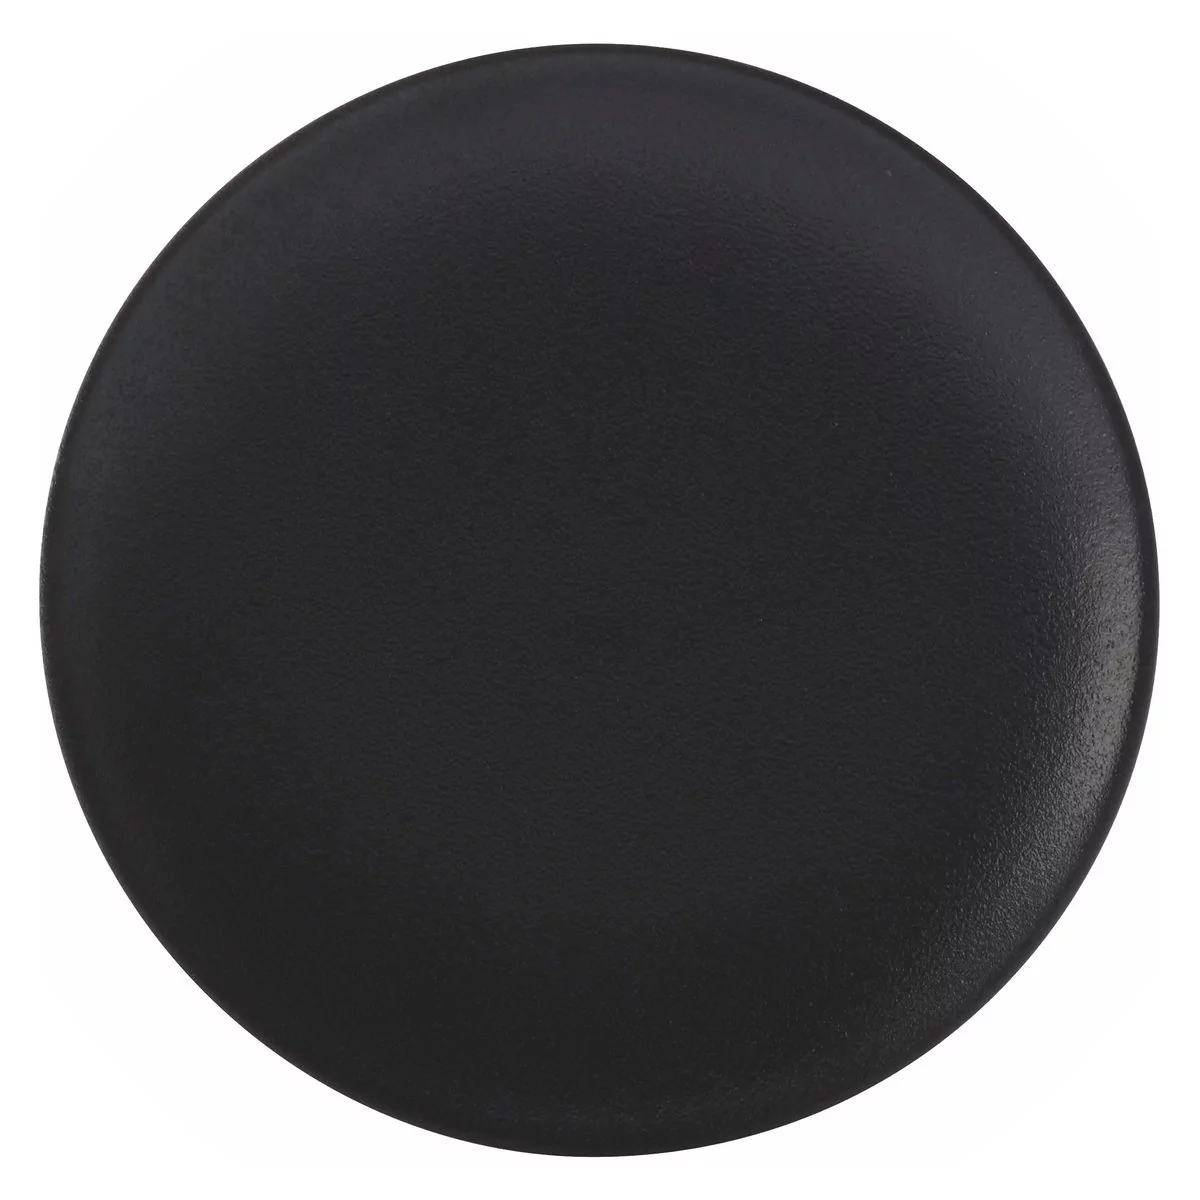 Czarny ceramiczny talerz deserowy Maxwell & Williams Caviar, ø 15 cm